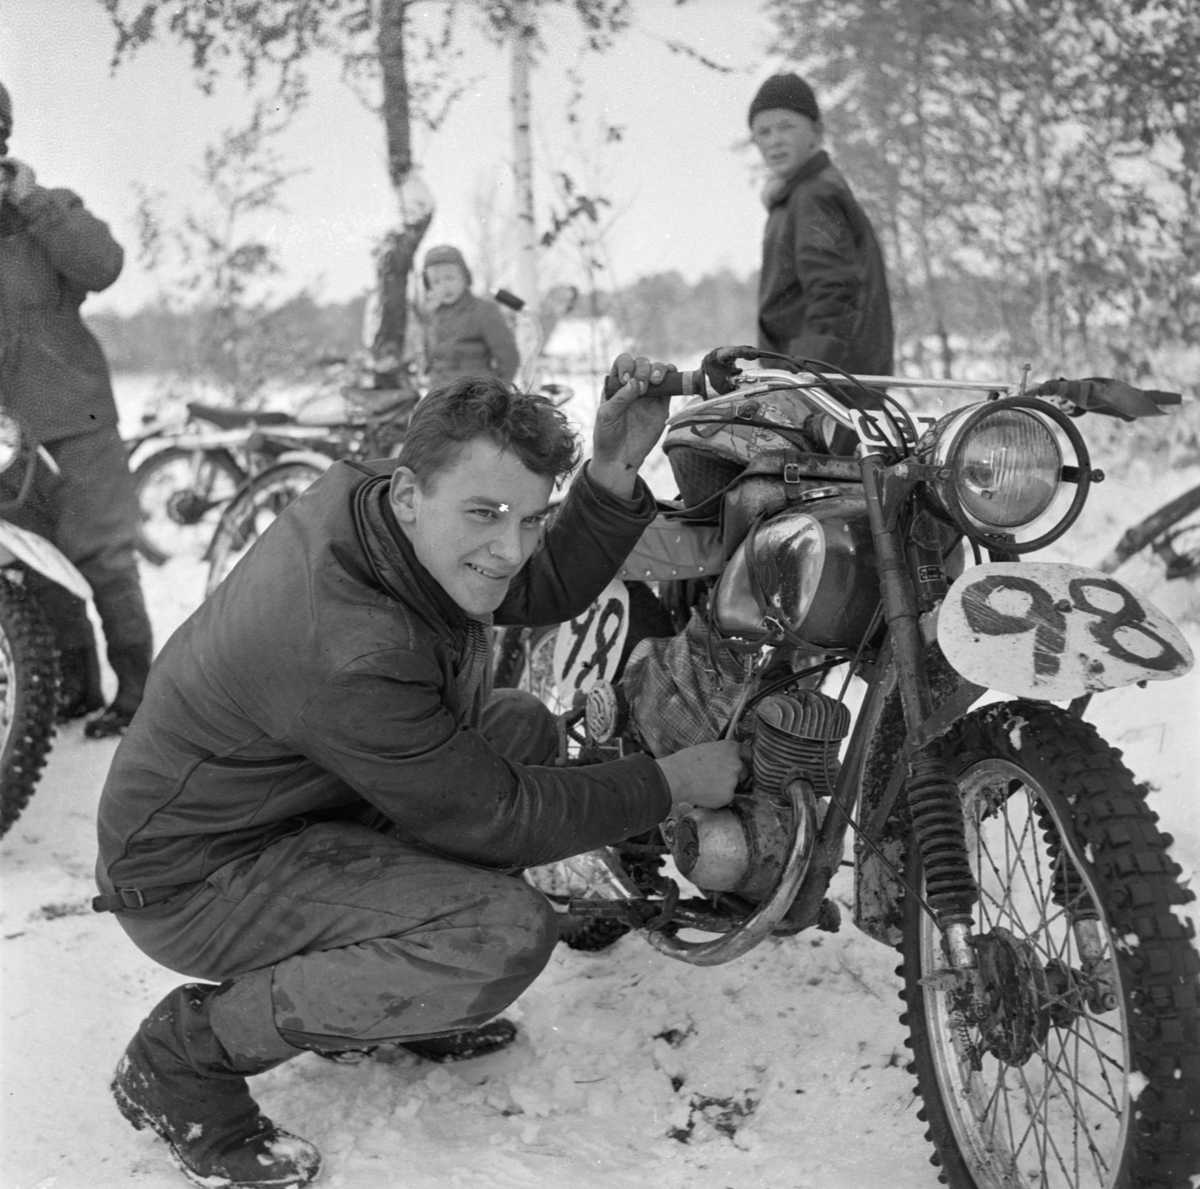 "Många goda prestationer" i motorcykeltävlingen Stigstråket, sannolikt Österbybruk, Films socken, Uppland oktober 1955. Rolf Nilsson från SMK Uppsala vid sin motorcykel